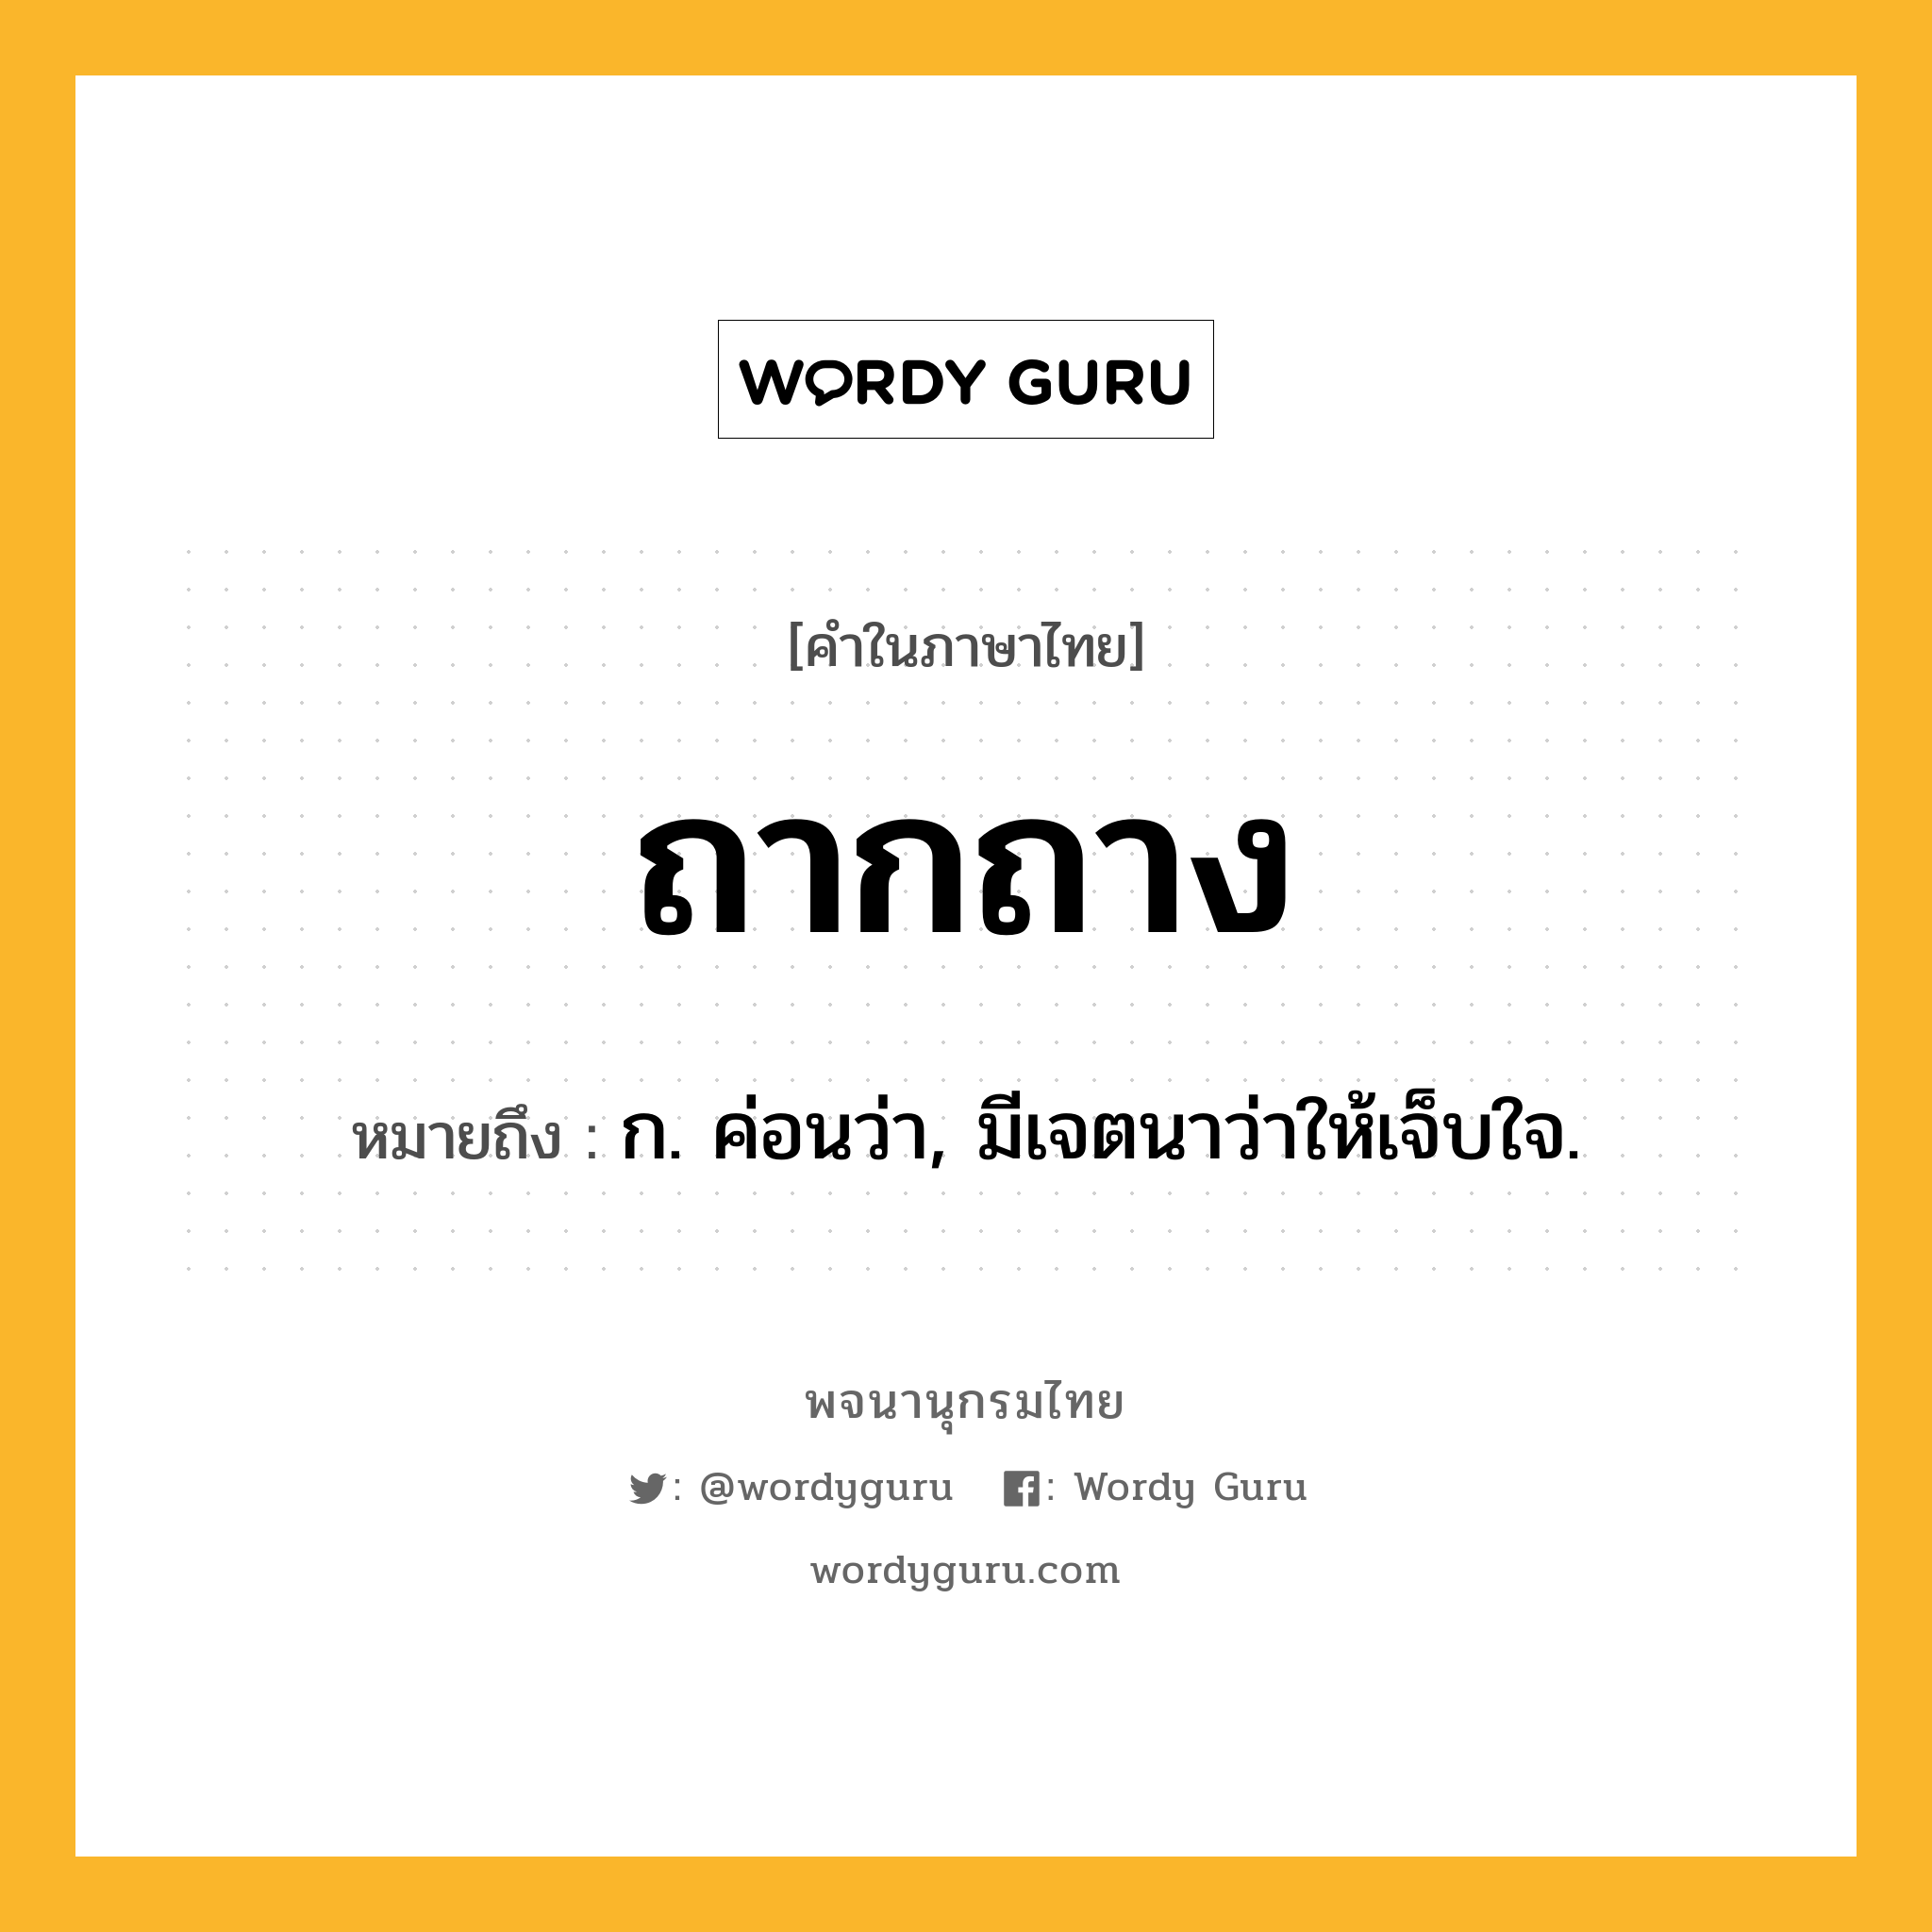 ถากถาง หมายถึงอะไร?, คำในภาษาไทย ถากถาง หมายถึง ก. ค่อนว่า, มีเจตนาว่าให้เจ็บใจ.